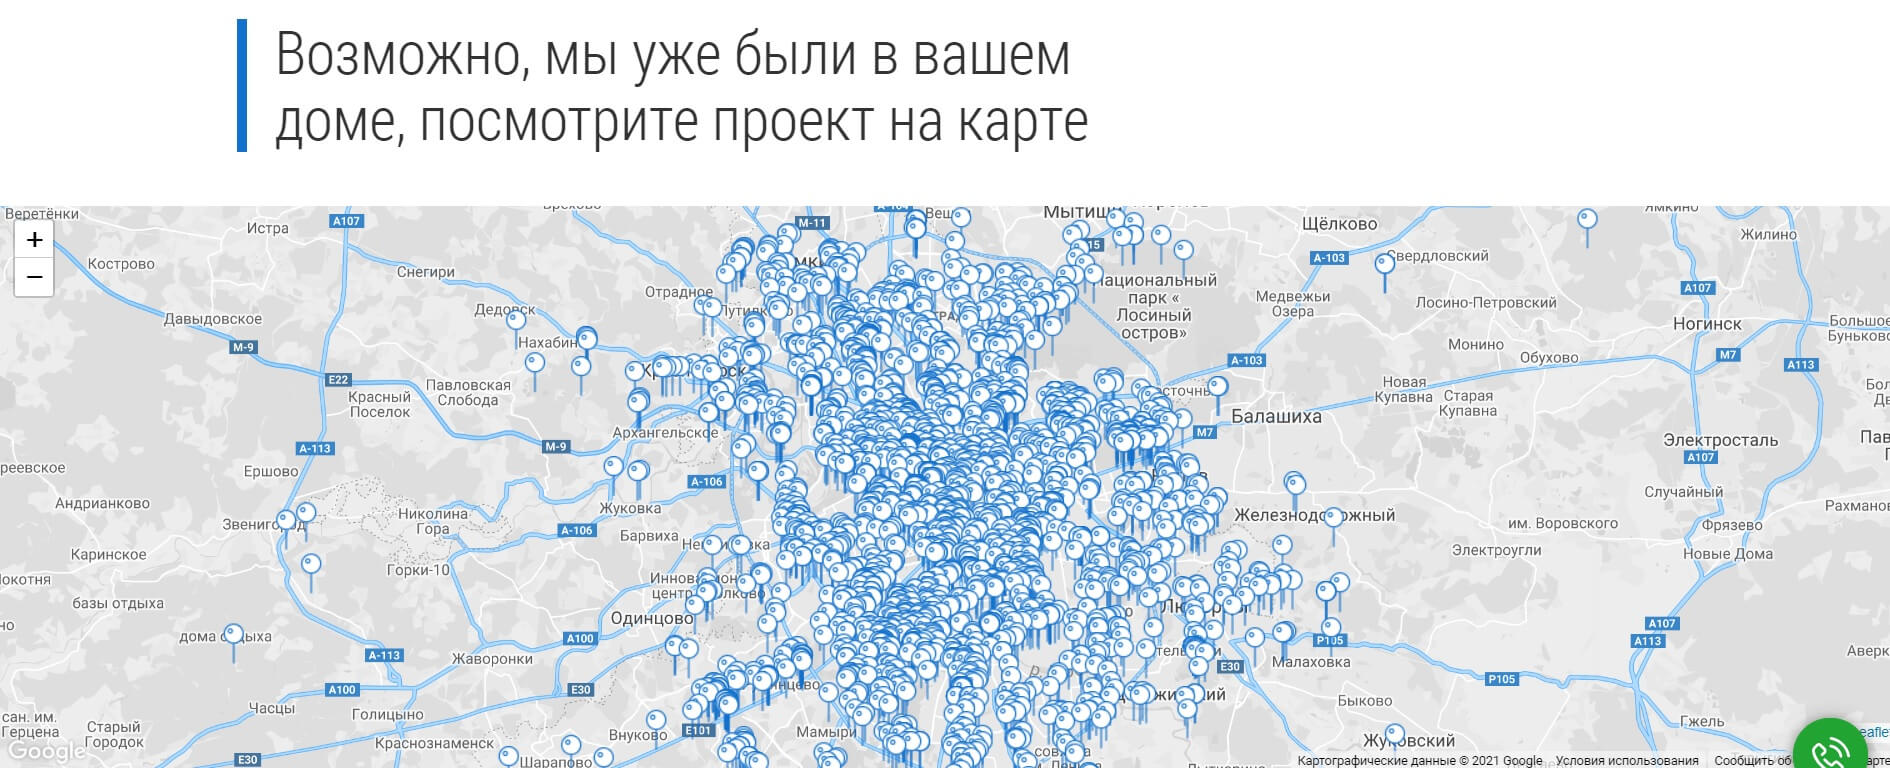 Карта Москвы и ближнего Подмосковья со всеми нашими проектами